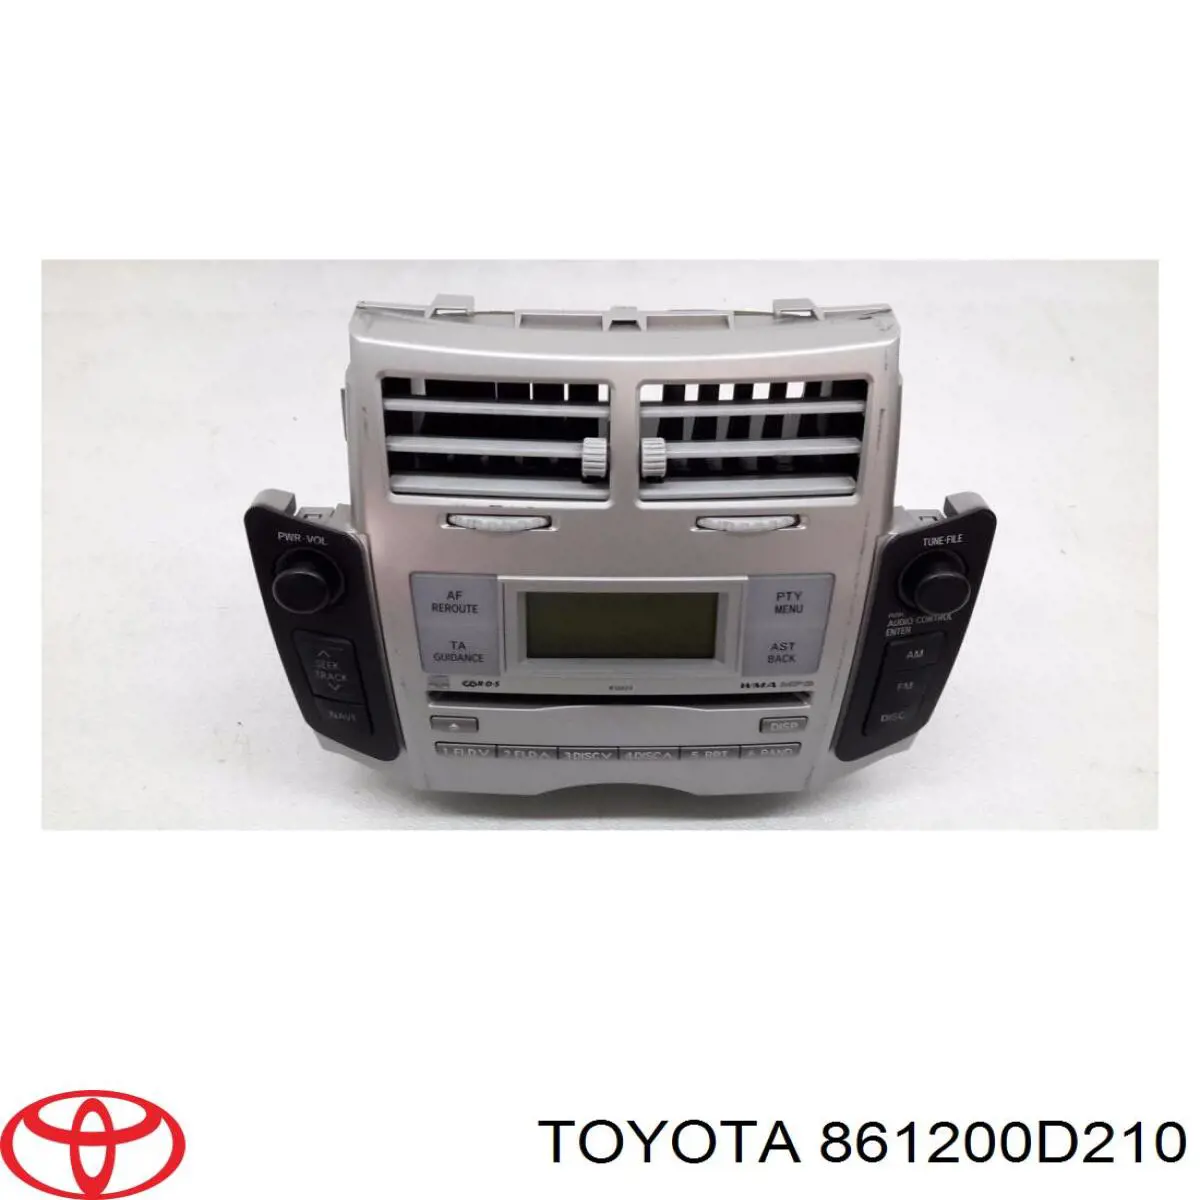 Aparelhagem de som (rádio AM/FM) para Toyota Yaris 